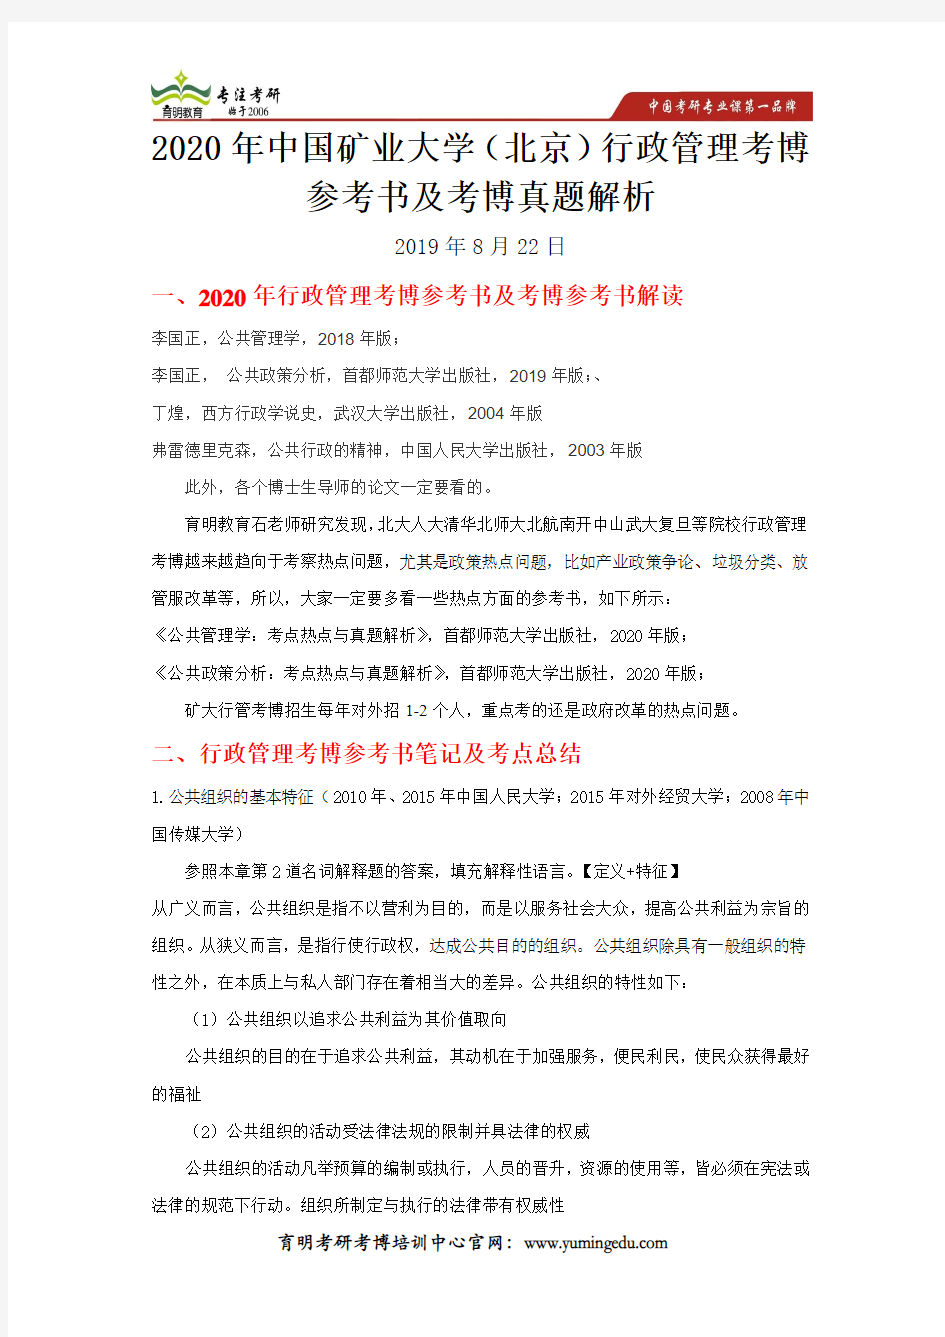 2020年中国矿业大学(北京)行政管理考博参考书及考博真题解析